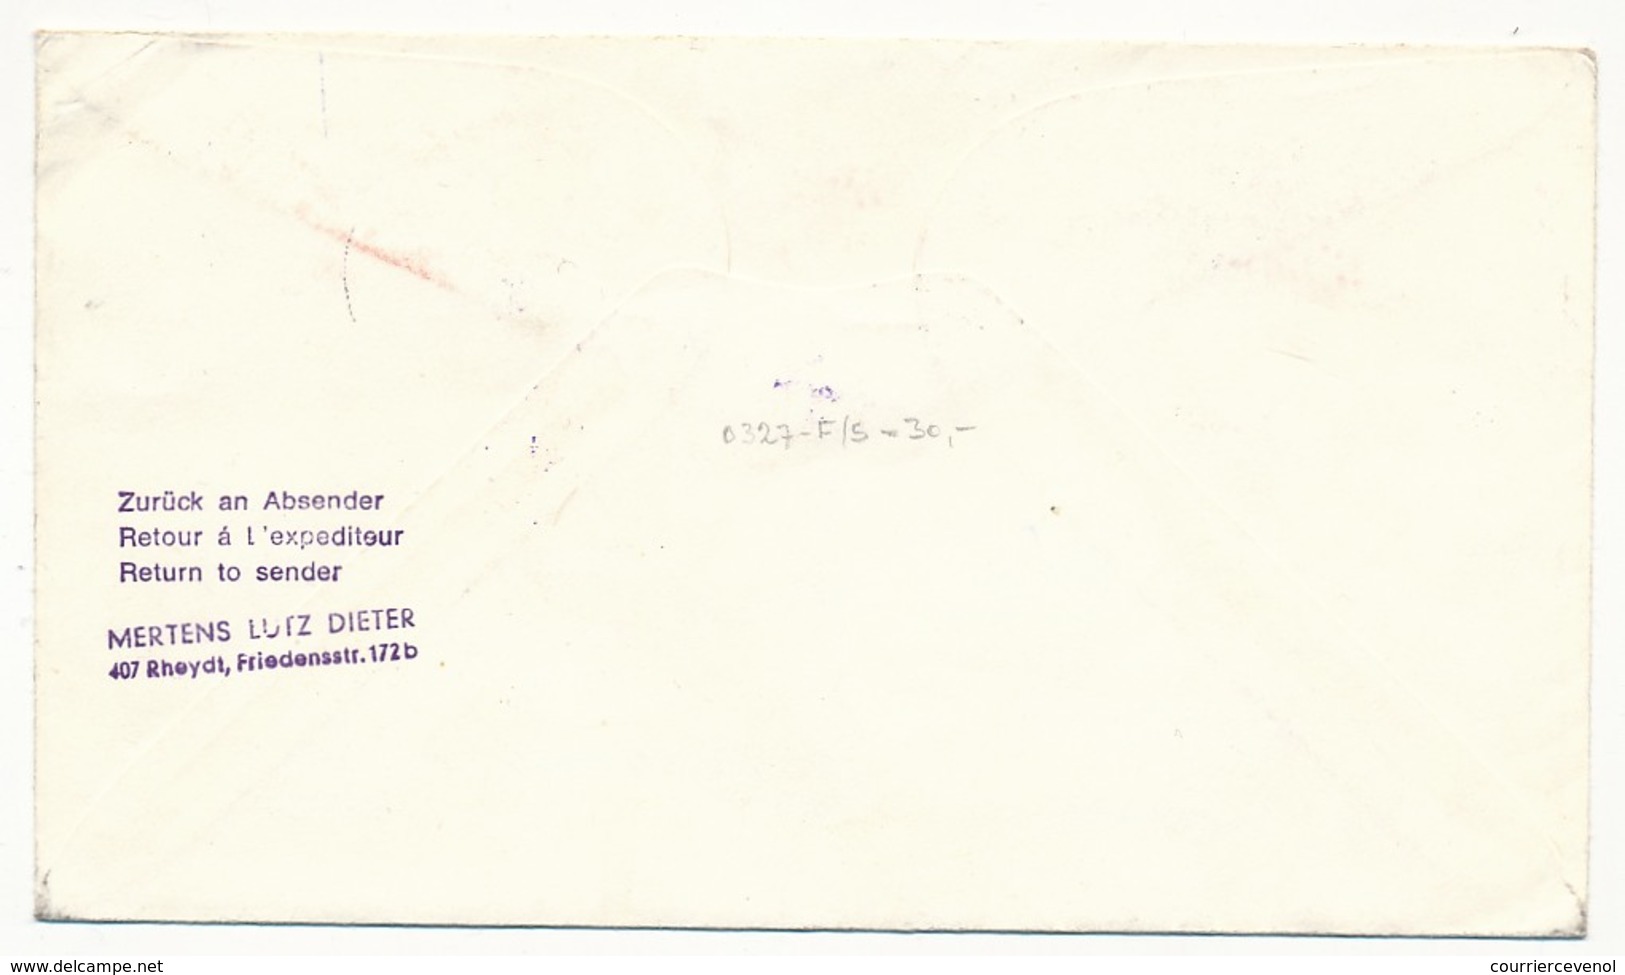 FRANCE - Enveloppe - Cachet GEMEX - BREST (poste Navale) + Cachet Lufthansa LH 412 - 1969 - Premiers Vols